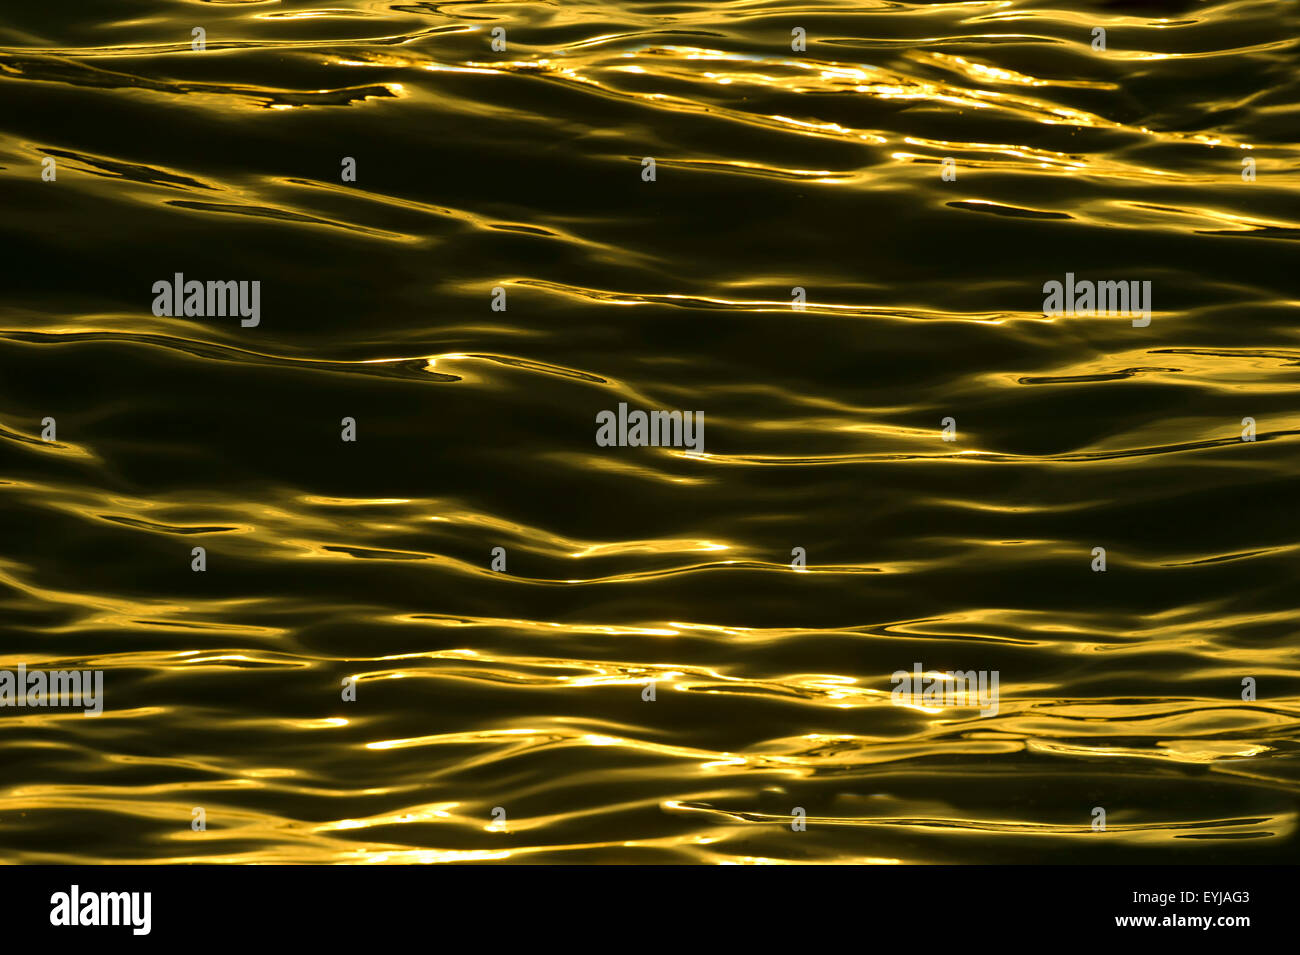 Wellen sind schöne goldene surreale Wellenmuster auf dem Wasser, einen faszinierende Natur Hintergrund zu bilden. Stockfoto